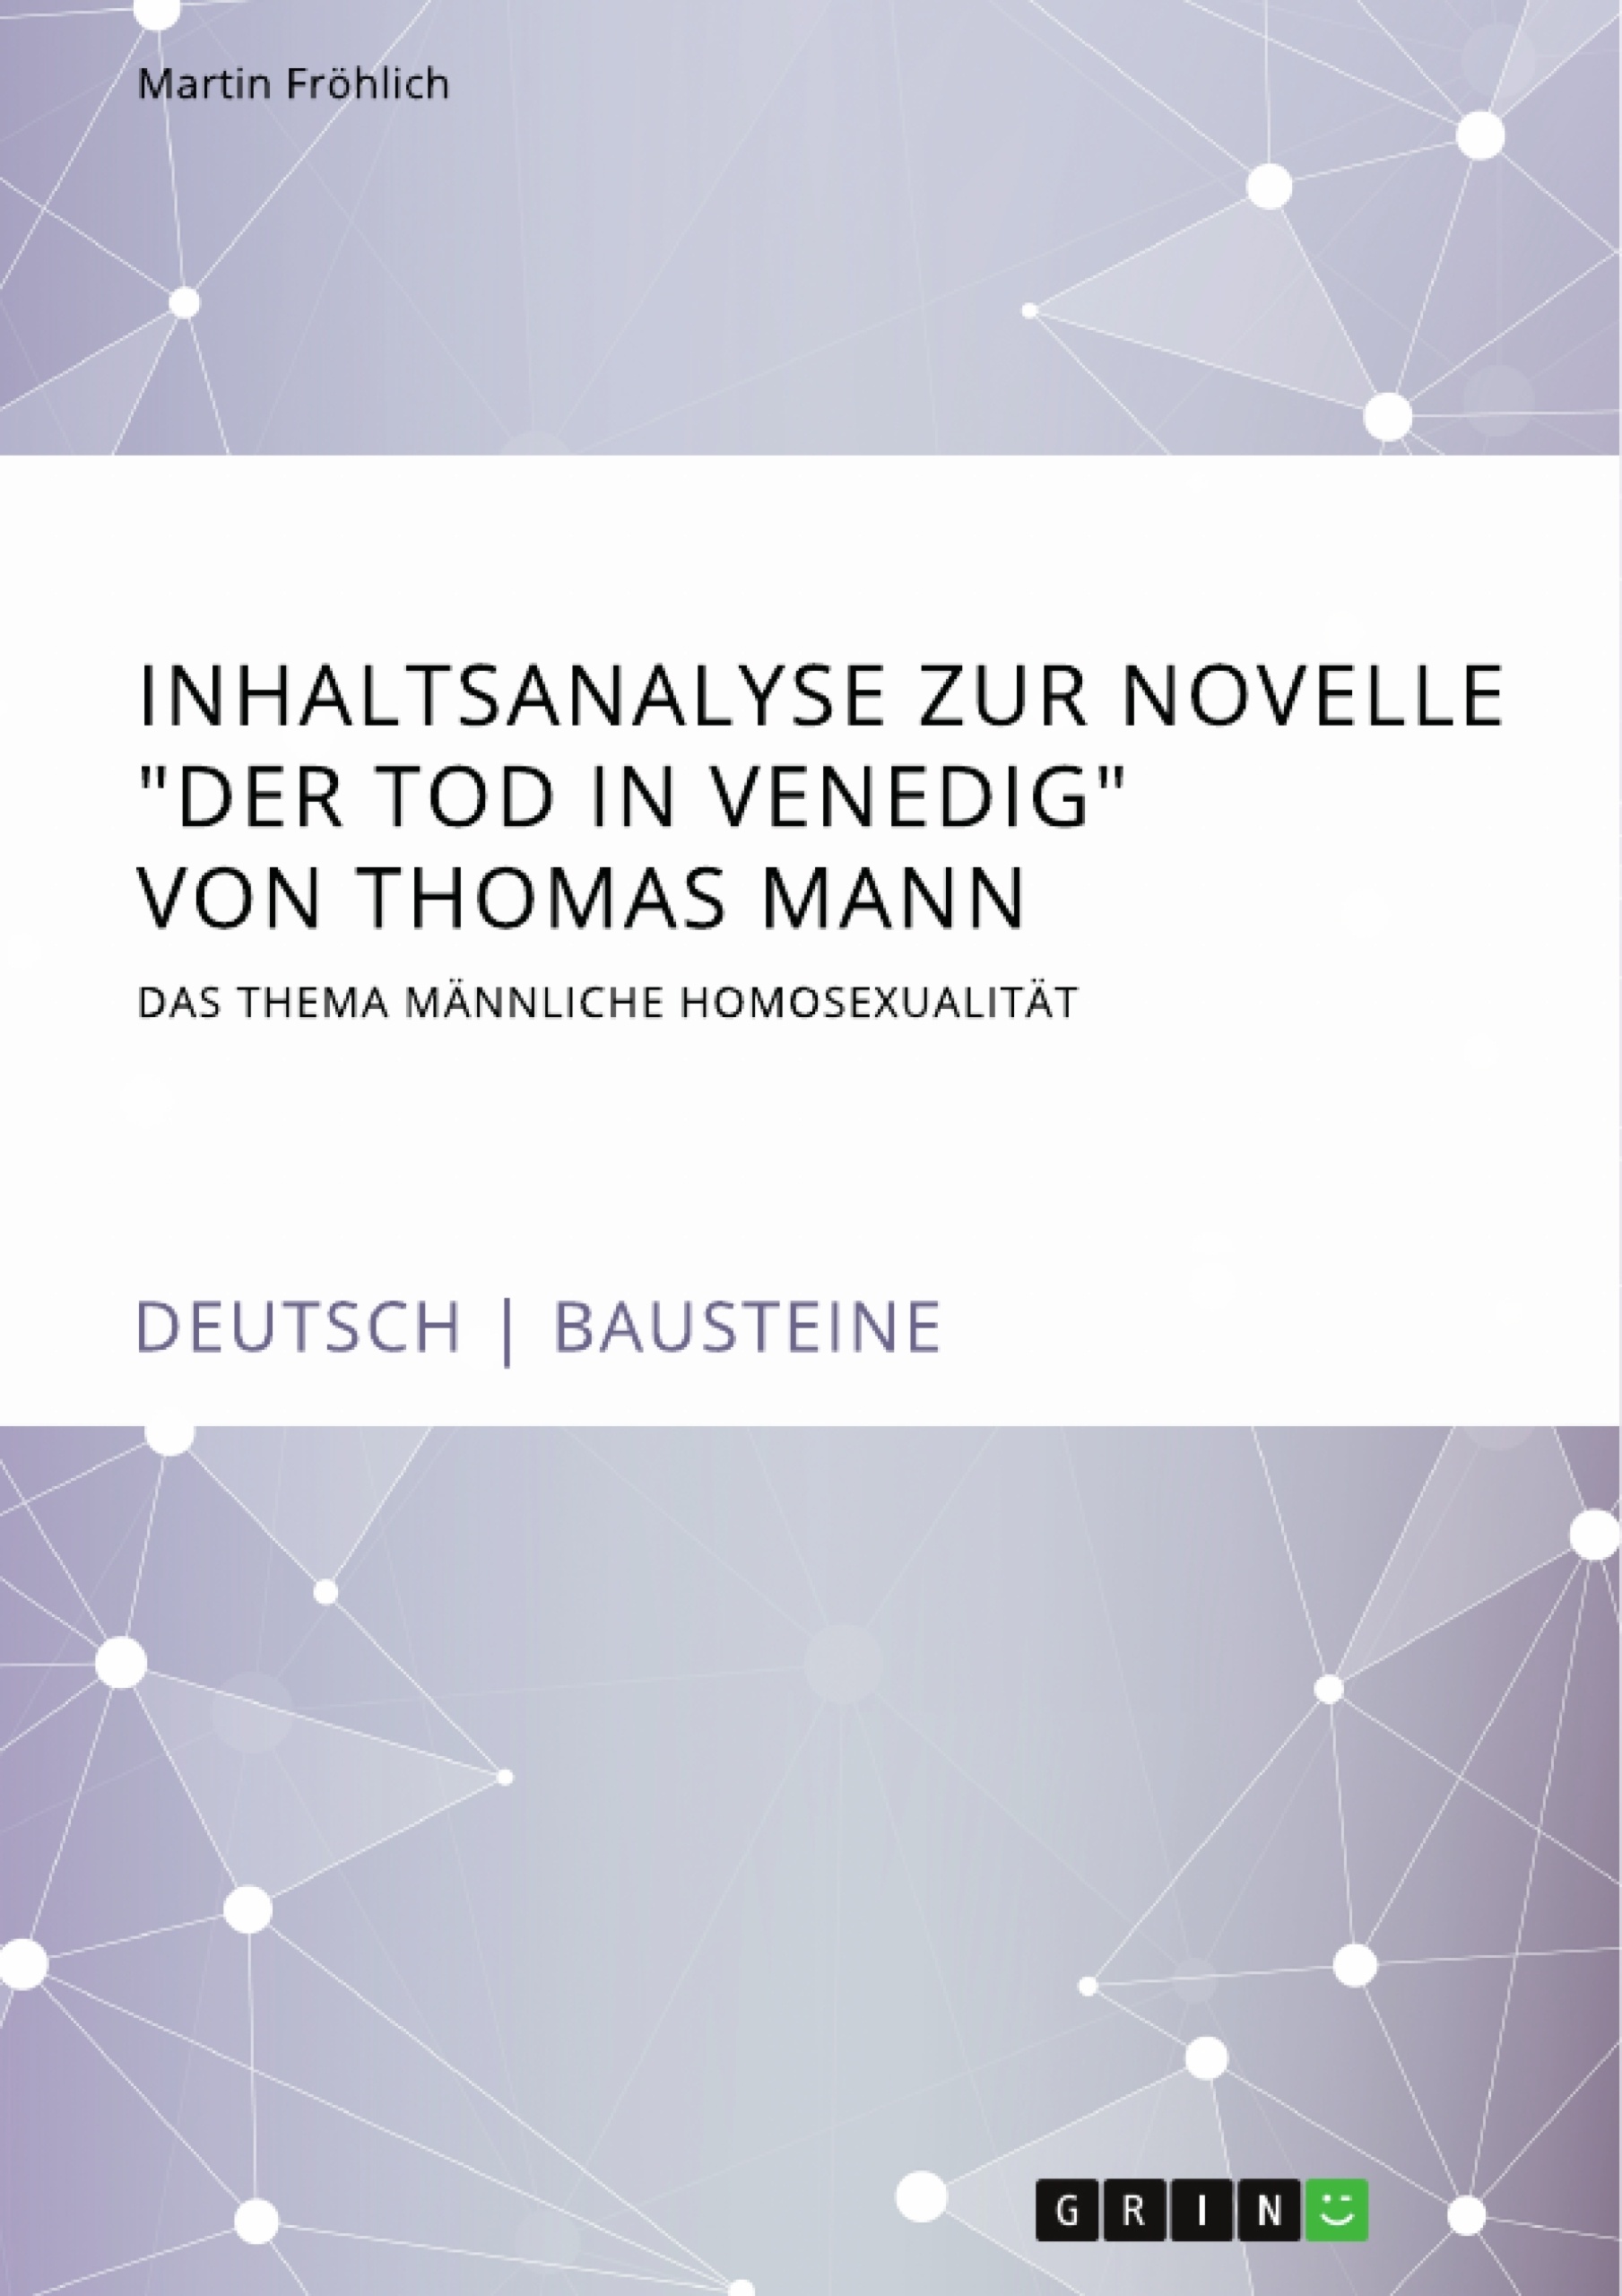 Title: Inhaltsanalyse zur Novelle "Der Tod in Venedig" von Thomas Mann. Das Thema männliche Homosexualität